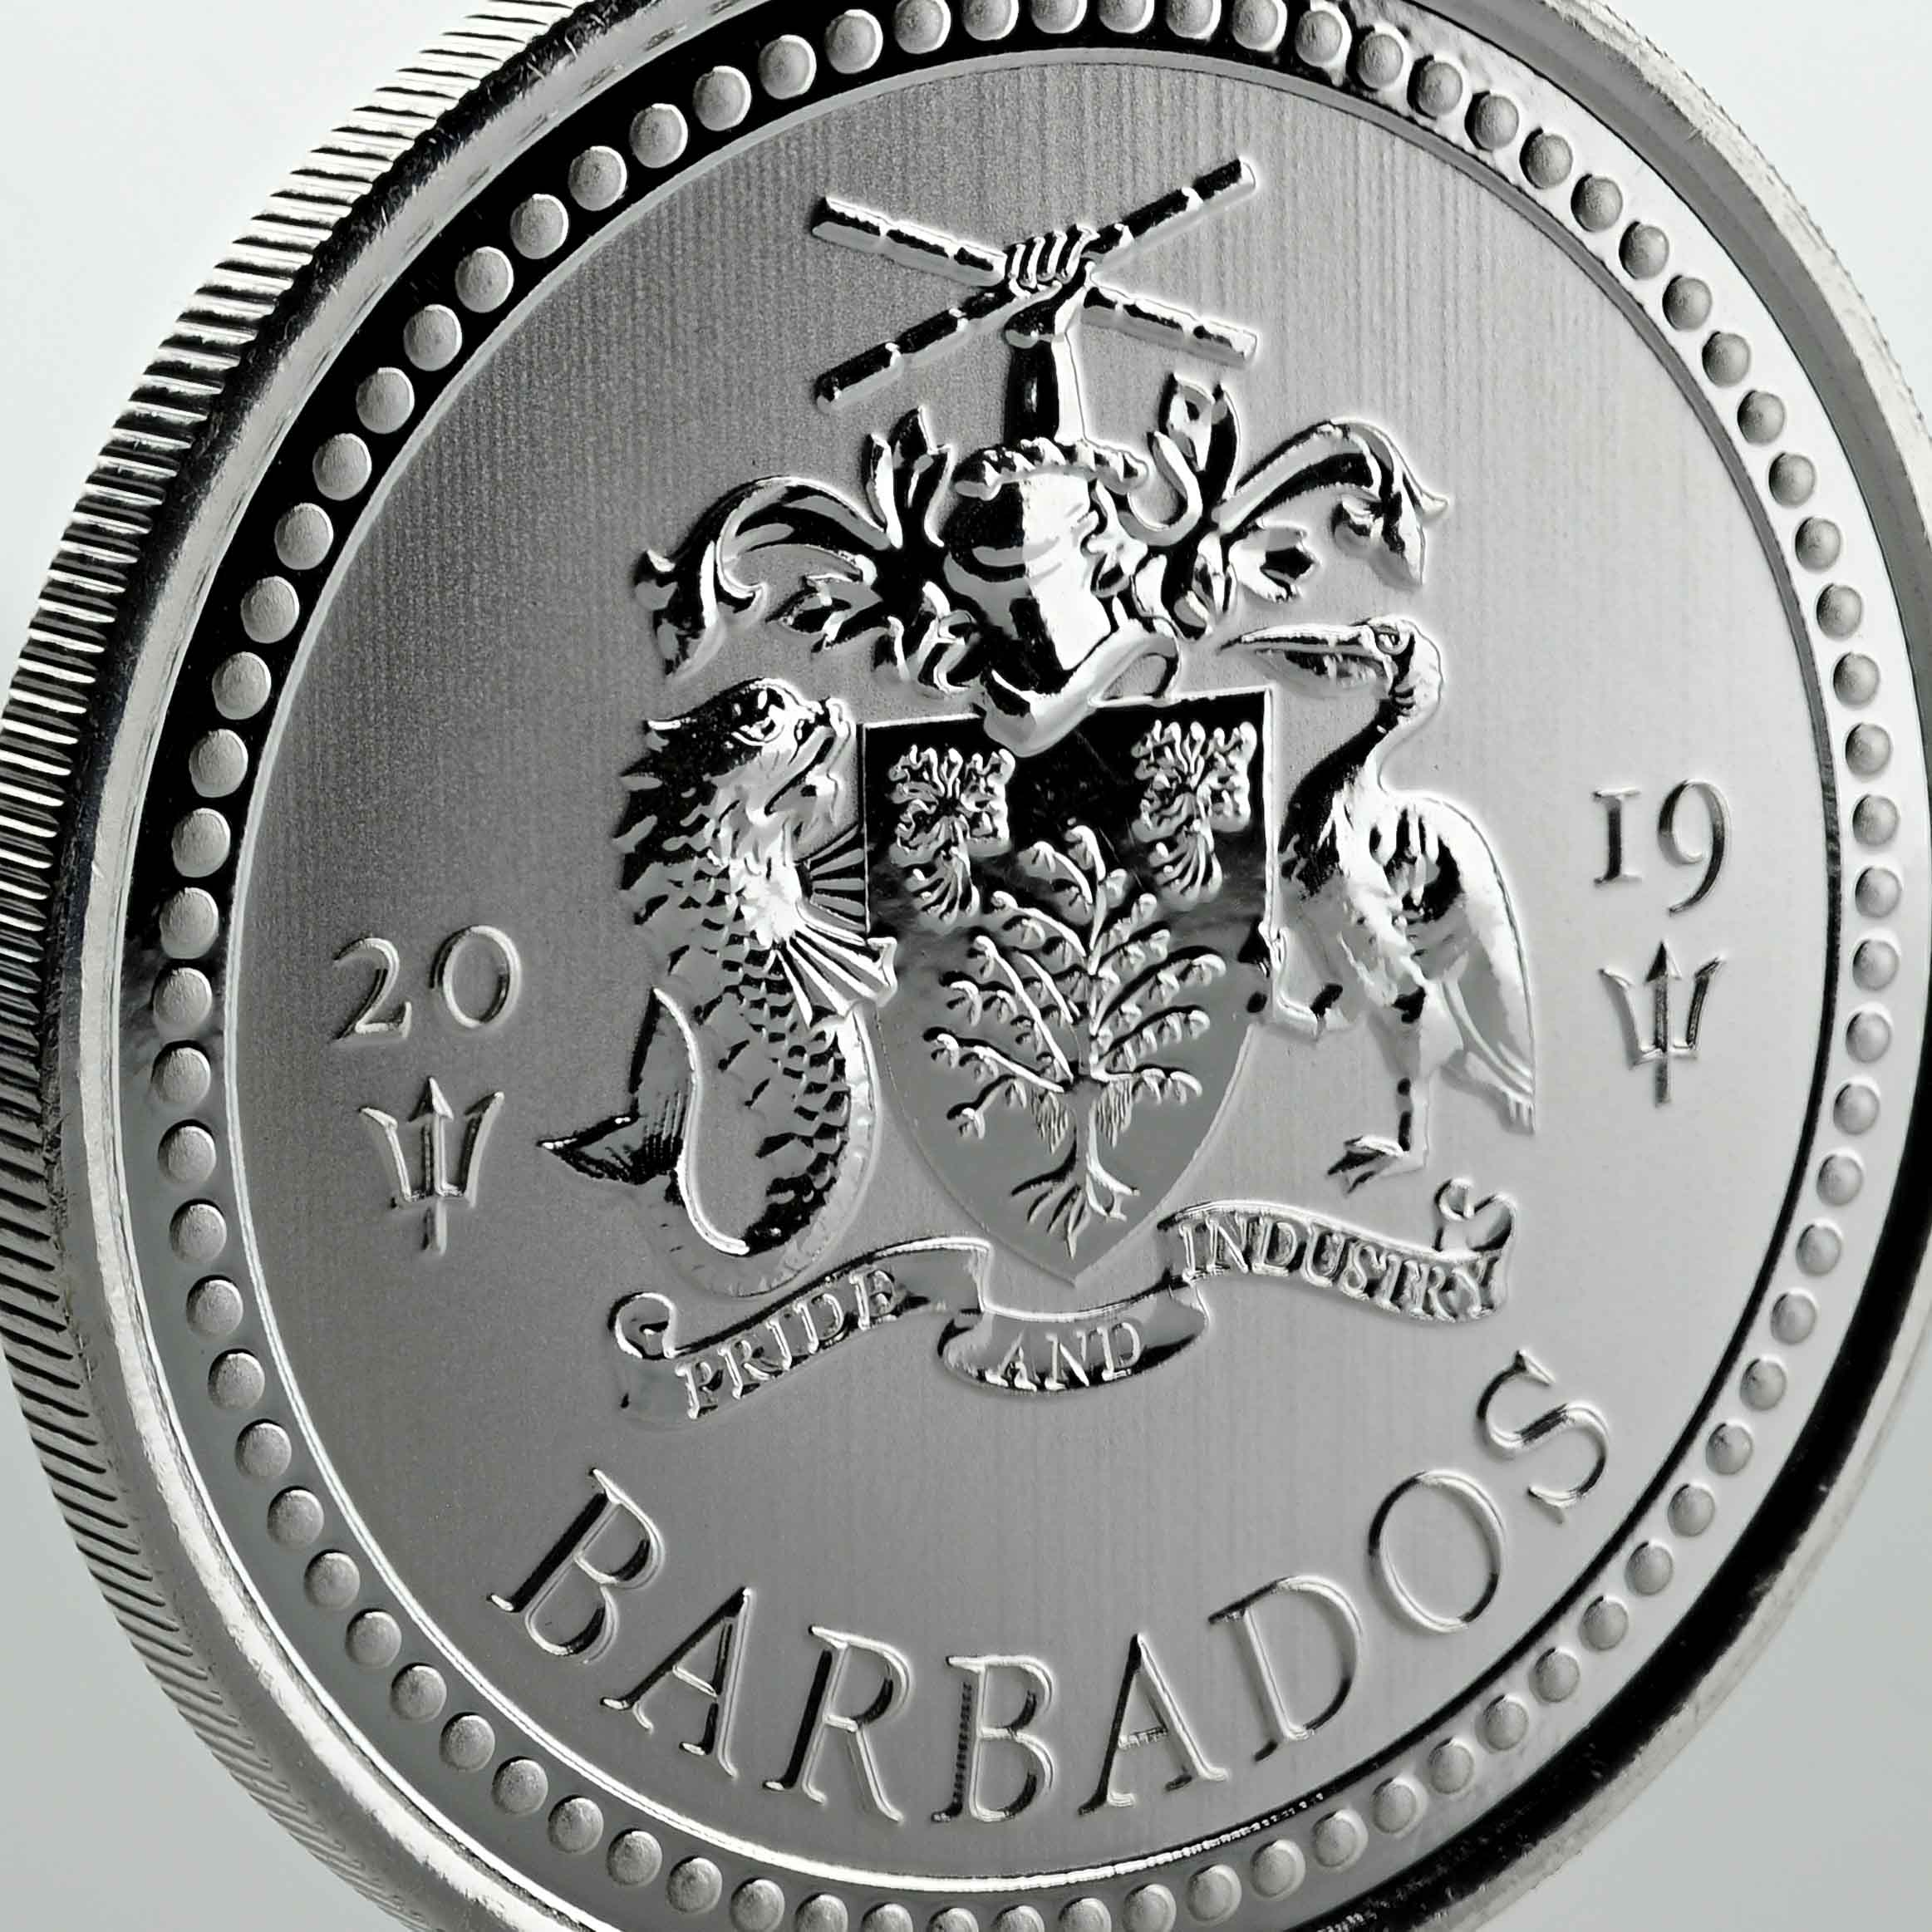 2019 Barbados Trident Silver - 1 oz Silver Coin